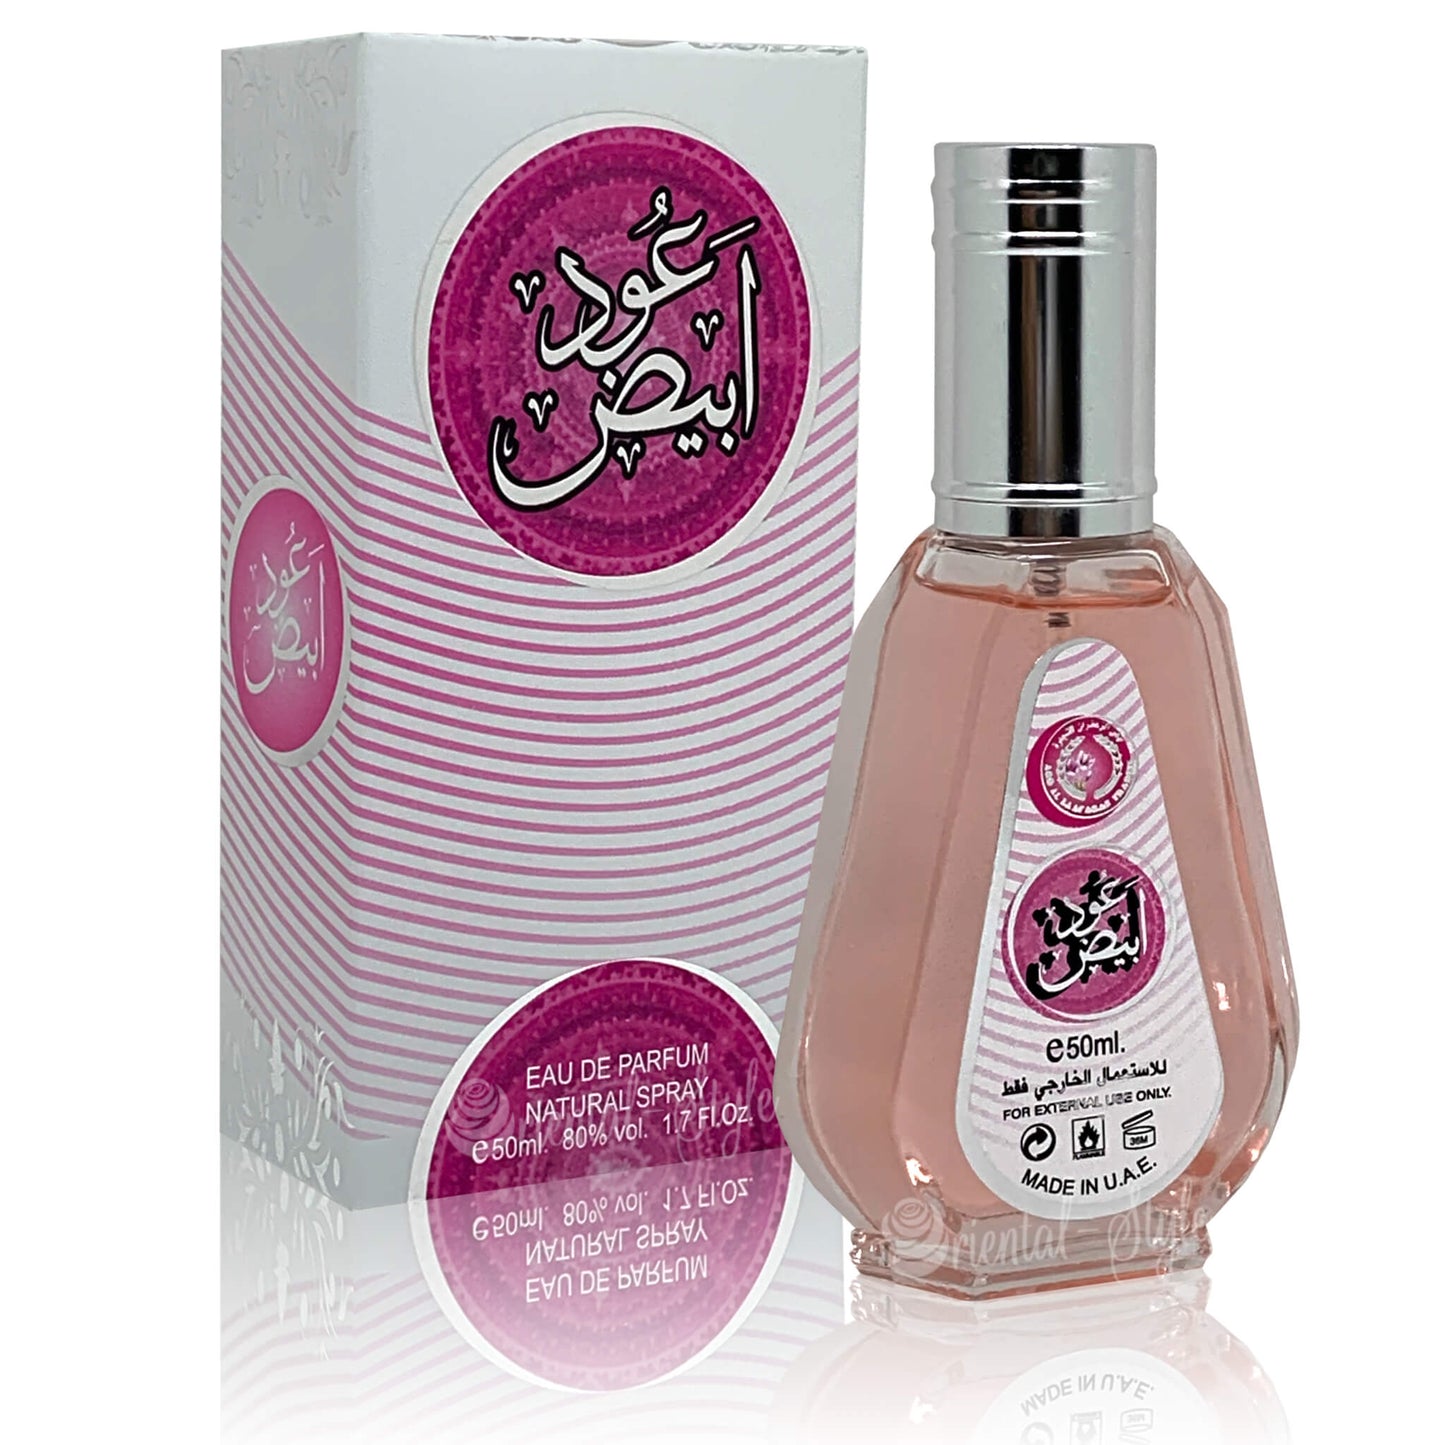 Apa de Parfum Oud Abiyedh, Ard Al Zaafaran, Femei - 50ml